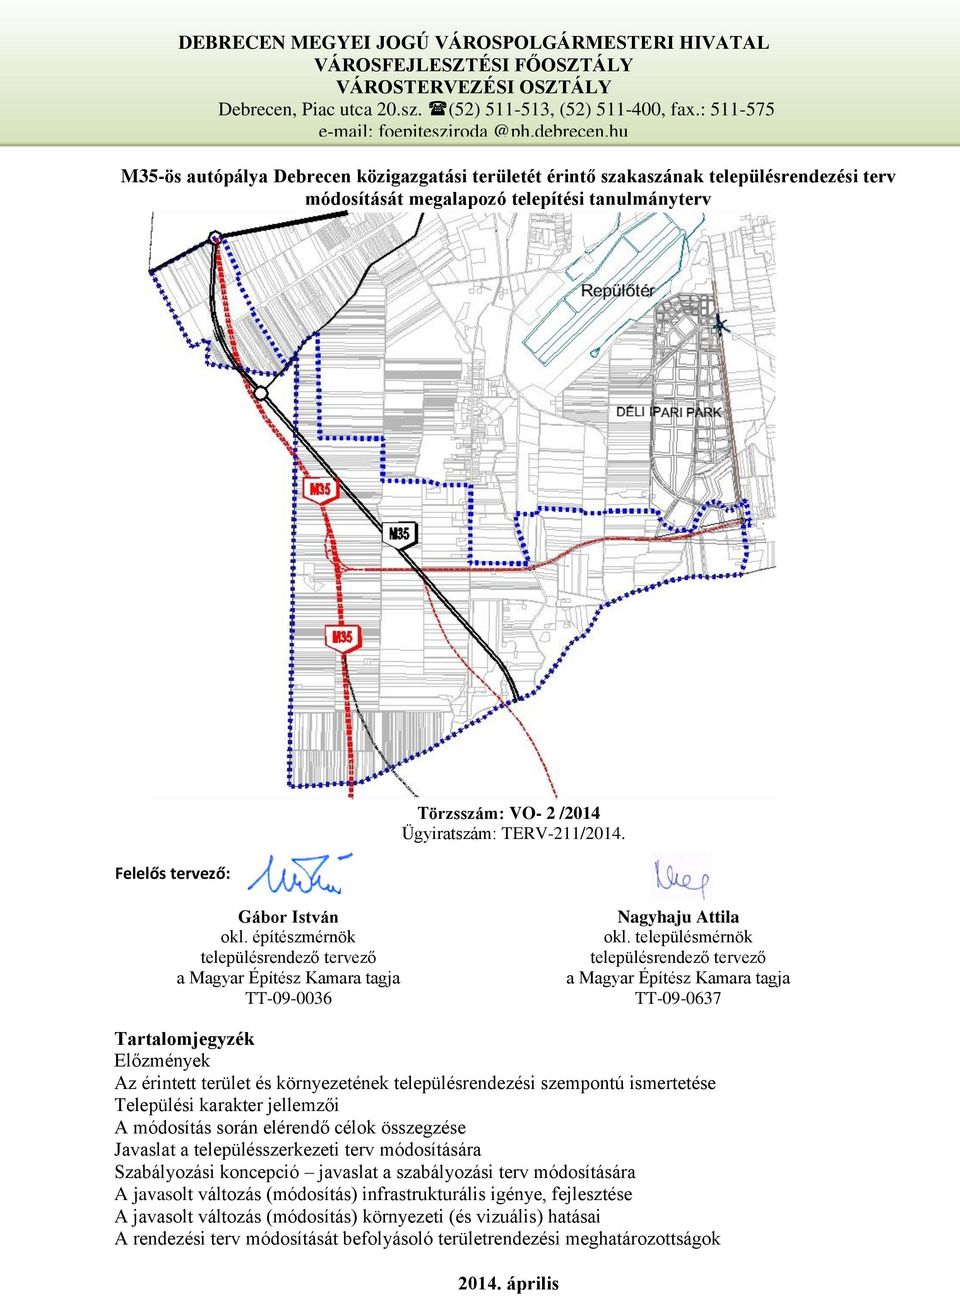 hu M35-ös autópálya Debrecen közigazgatási területét érintő szakaszának településrendezési terv módosítását megalapozó telepítési tanulmányterv Felelős tervező: Törzsszám: VO- 2 /2014 Ügyiratszám: